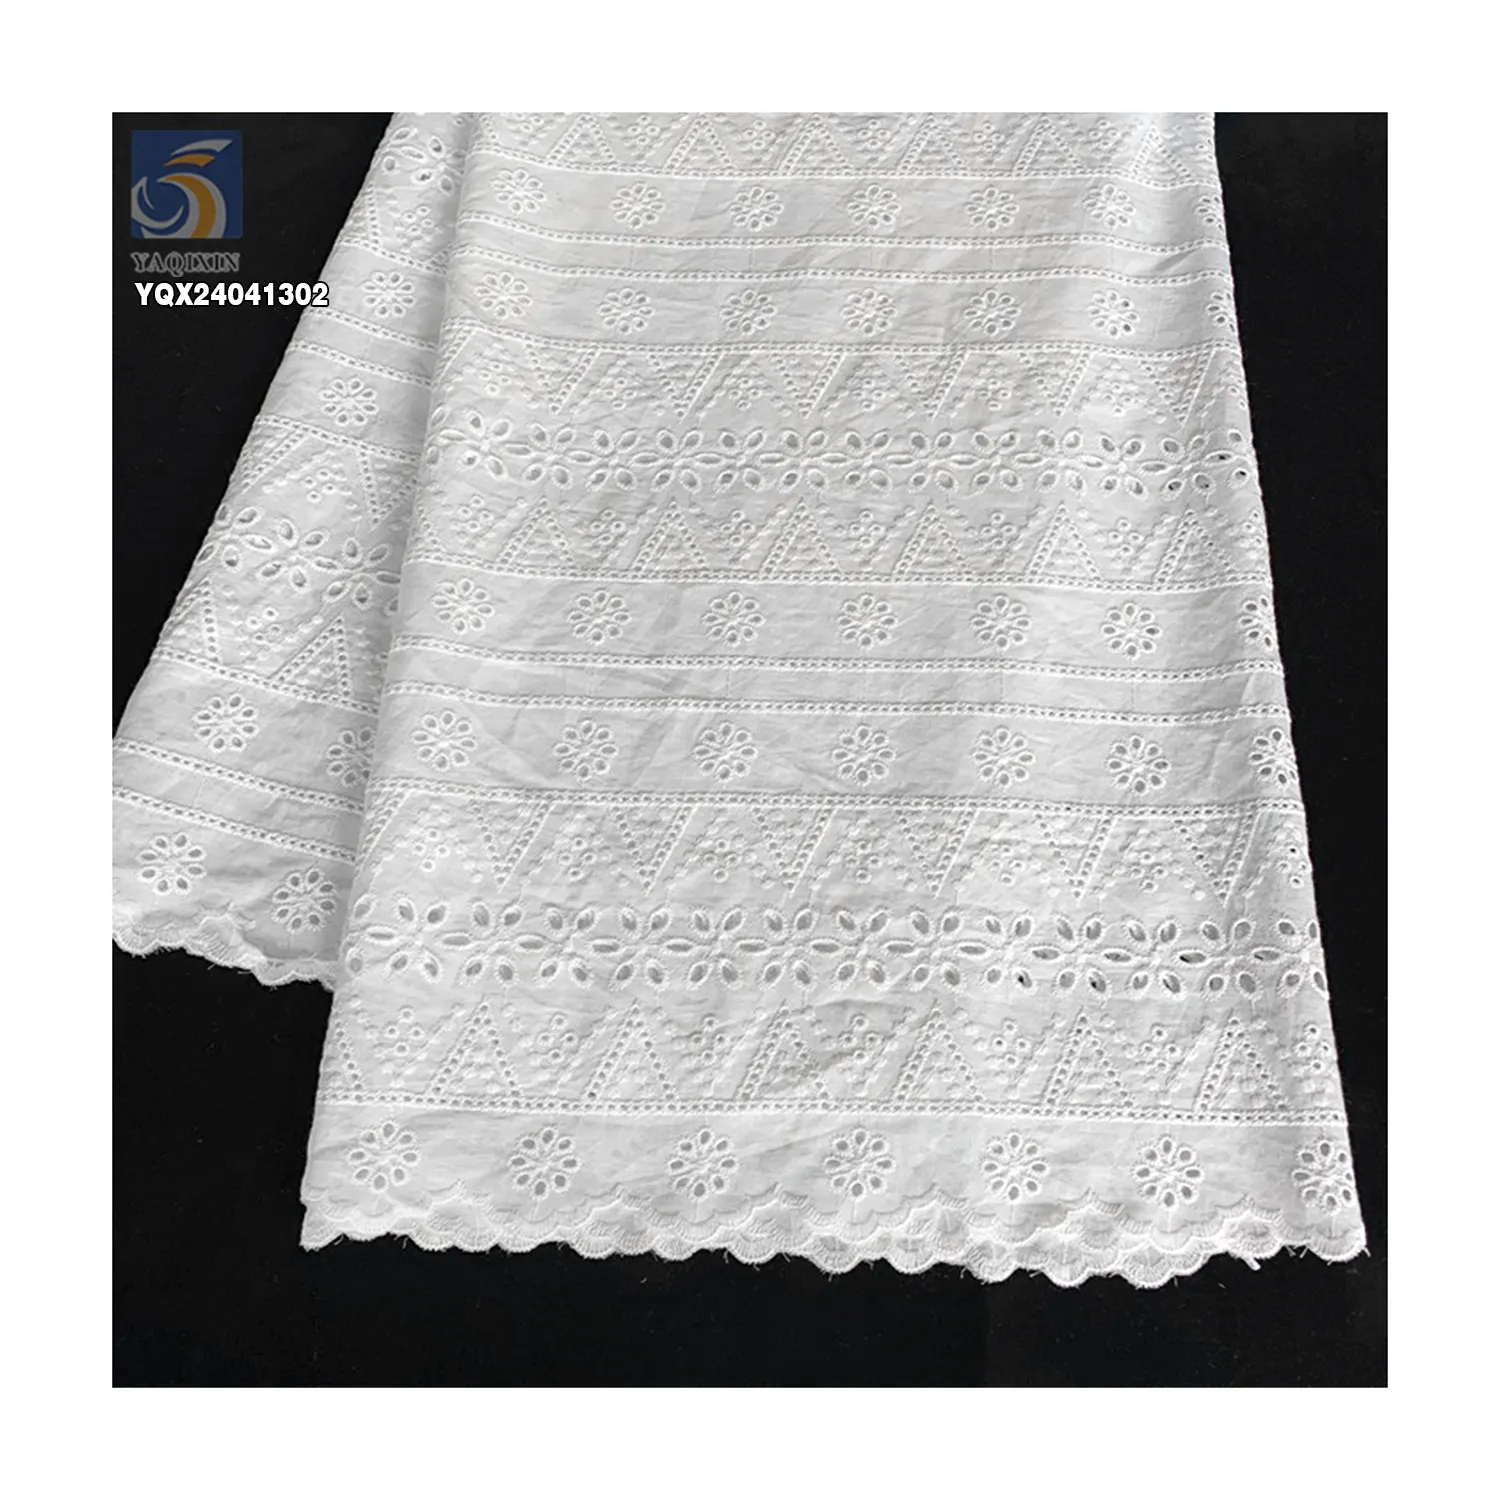 قماش دانتيل قطني سويسري من الفوال مناسب لفستان الزفاف للبيع بالجملة 100 قطعة قماش دانتيل قطني مطرزة بحواف